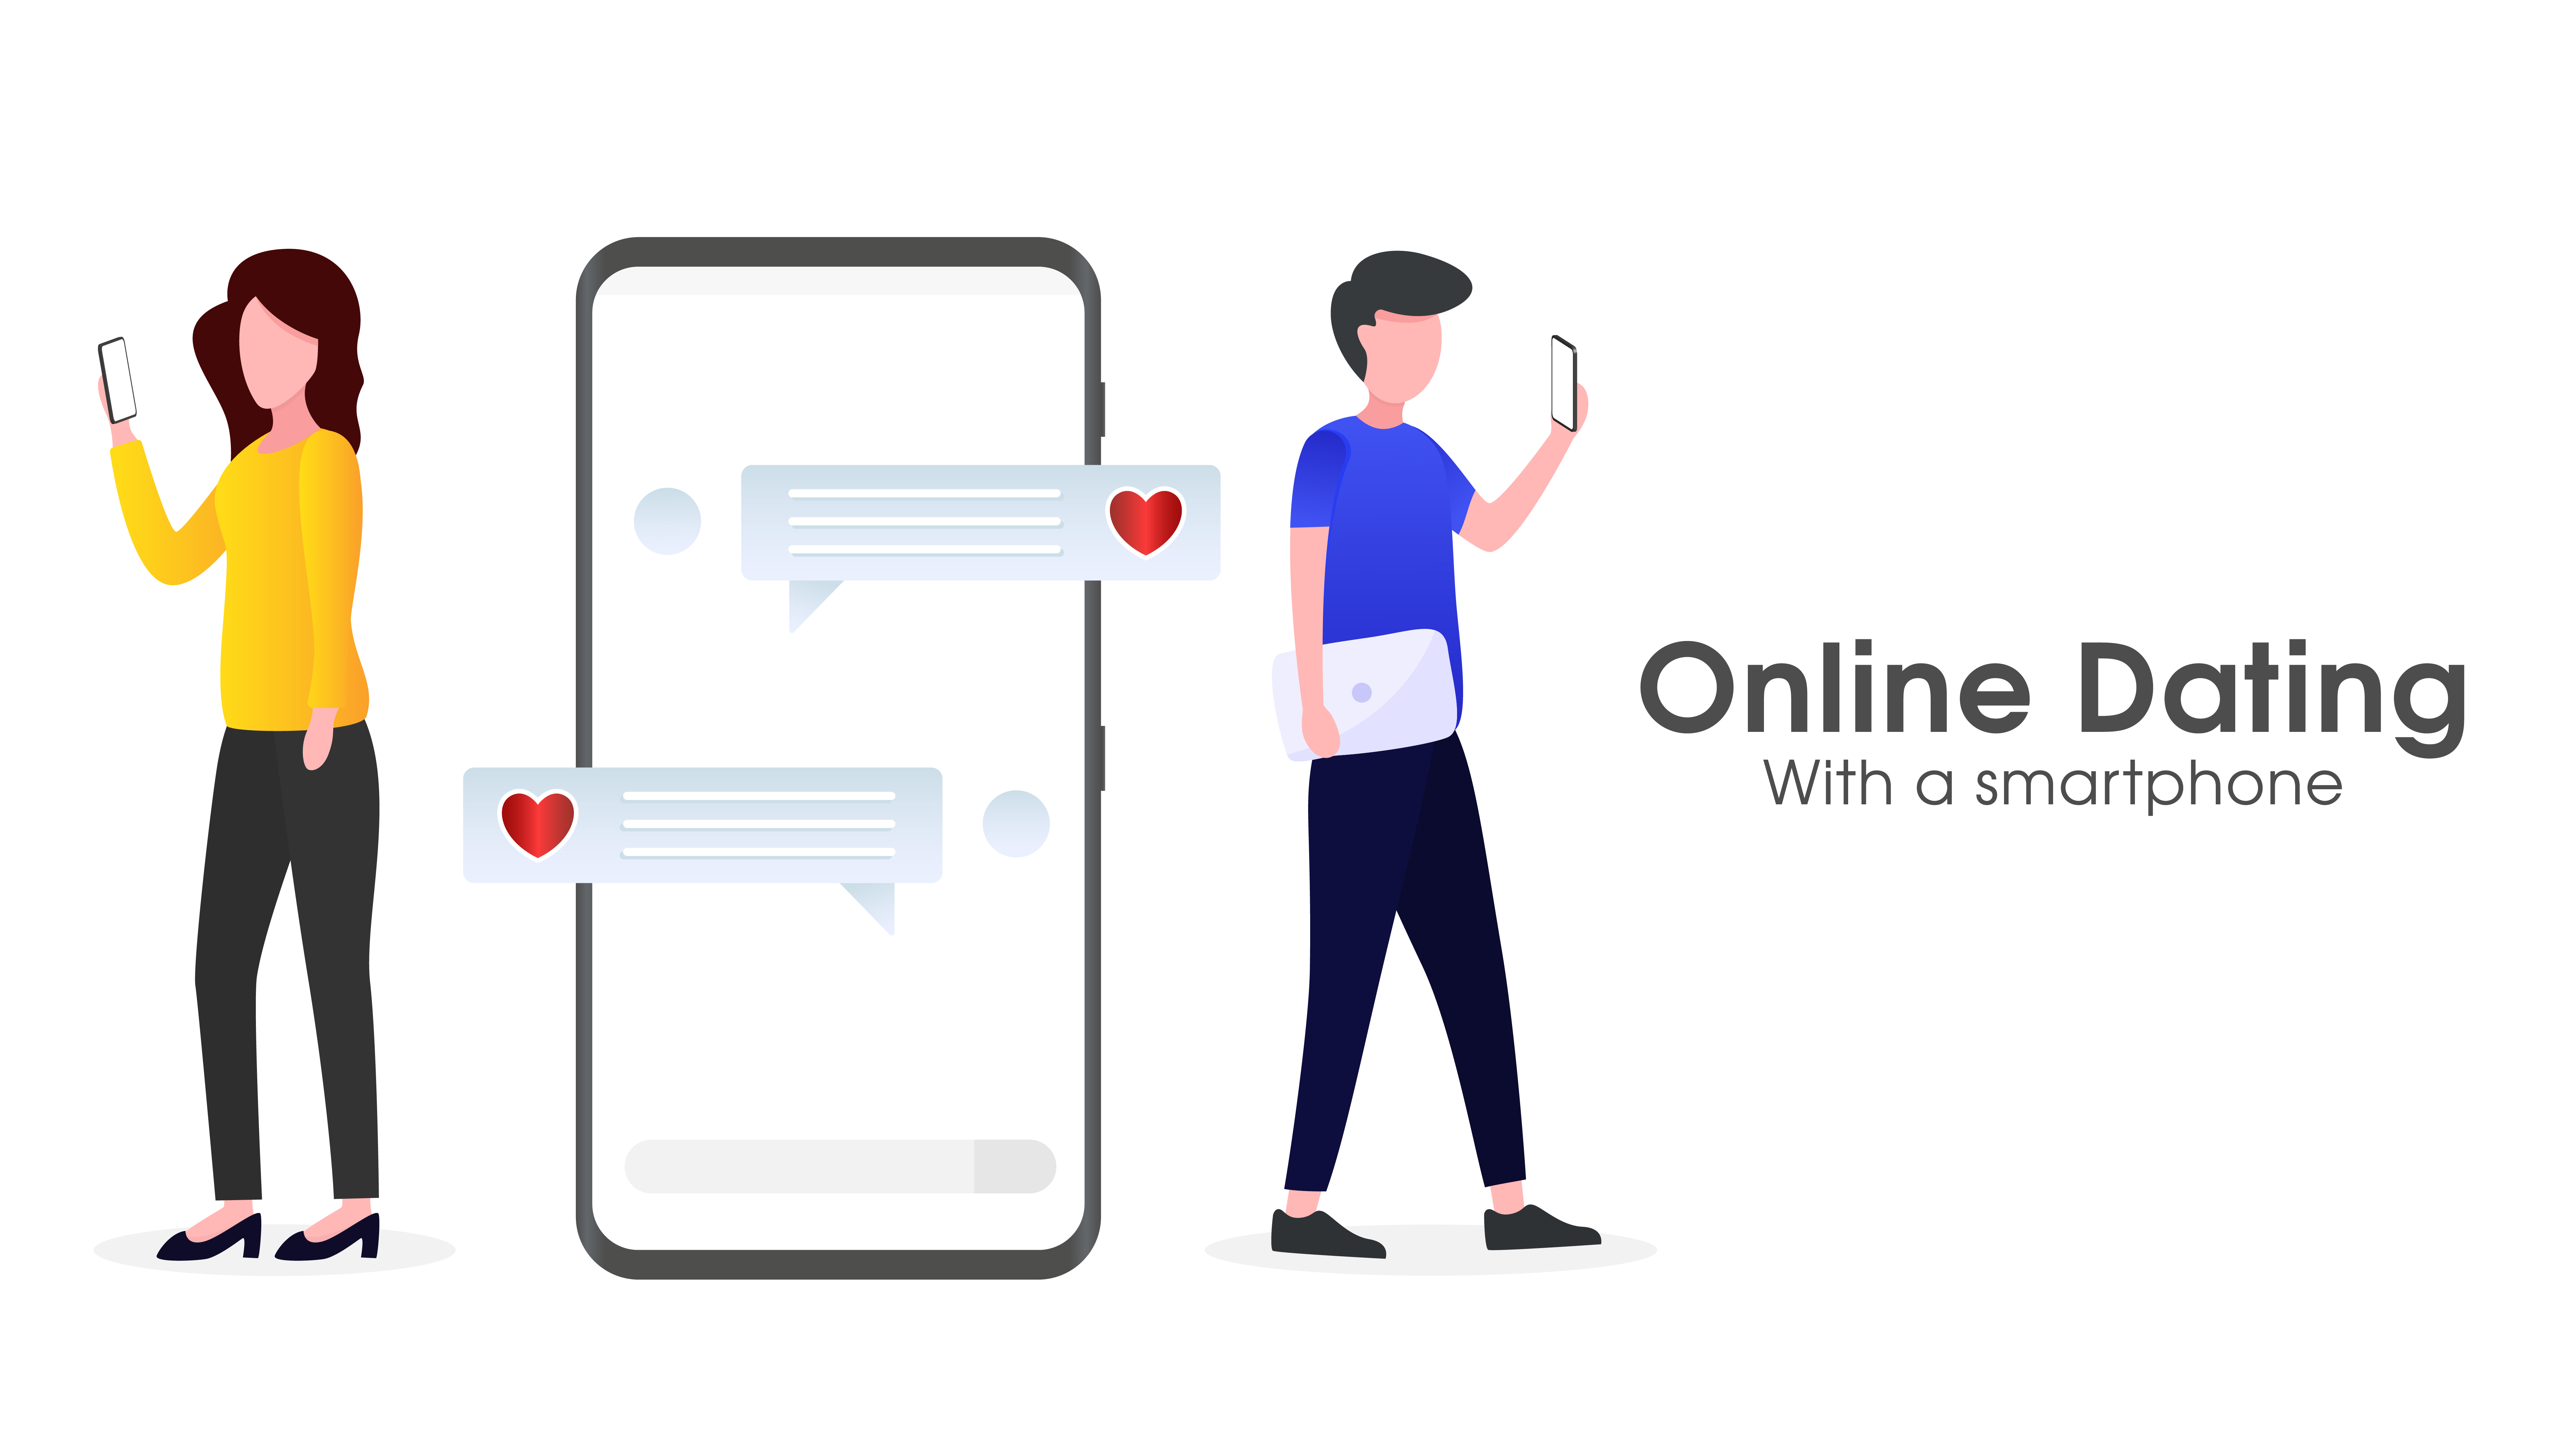 Online dating app with smartphones